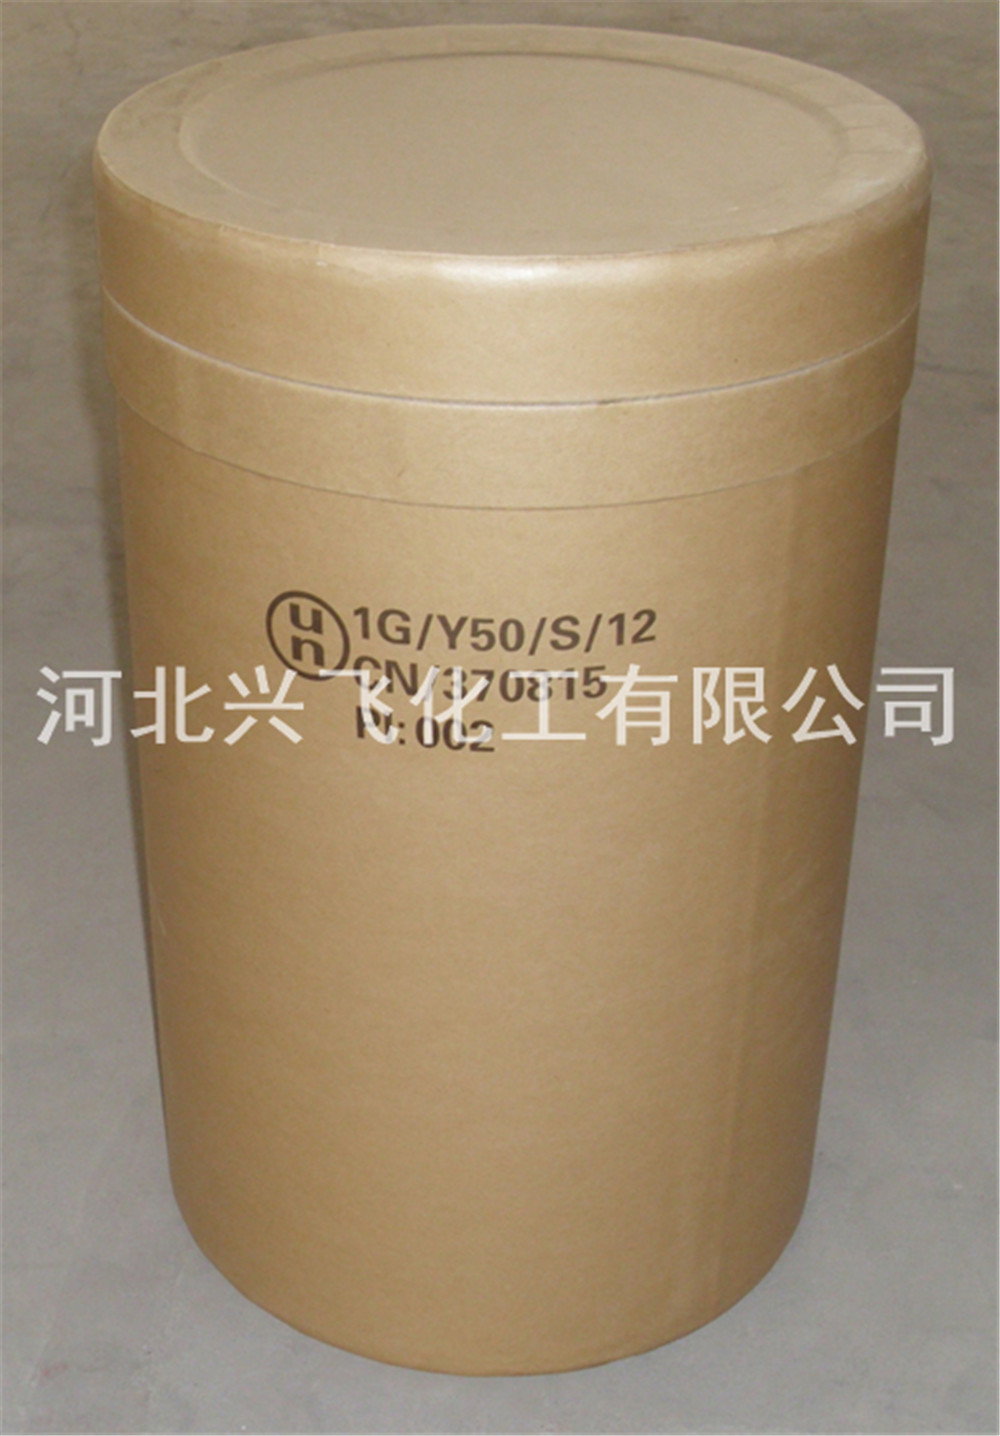 Sodium dichloroisocyanurate dihydrate (1)